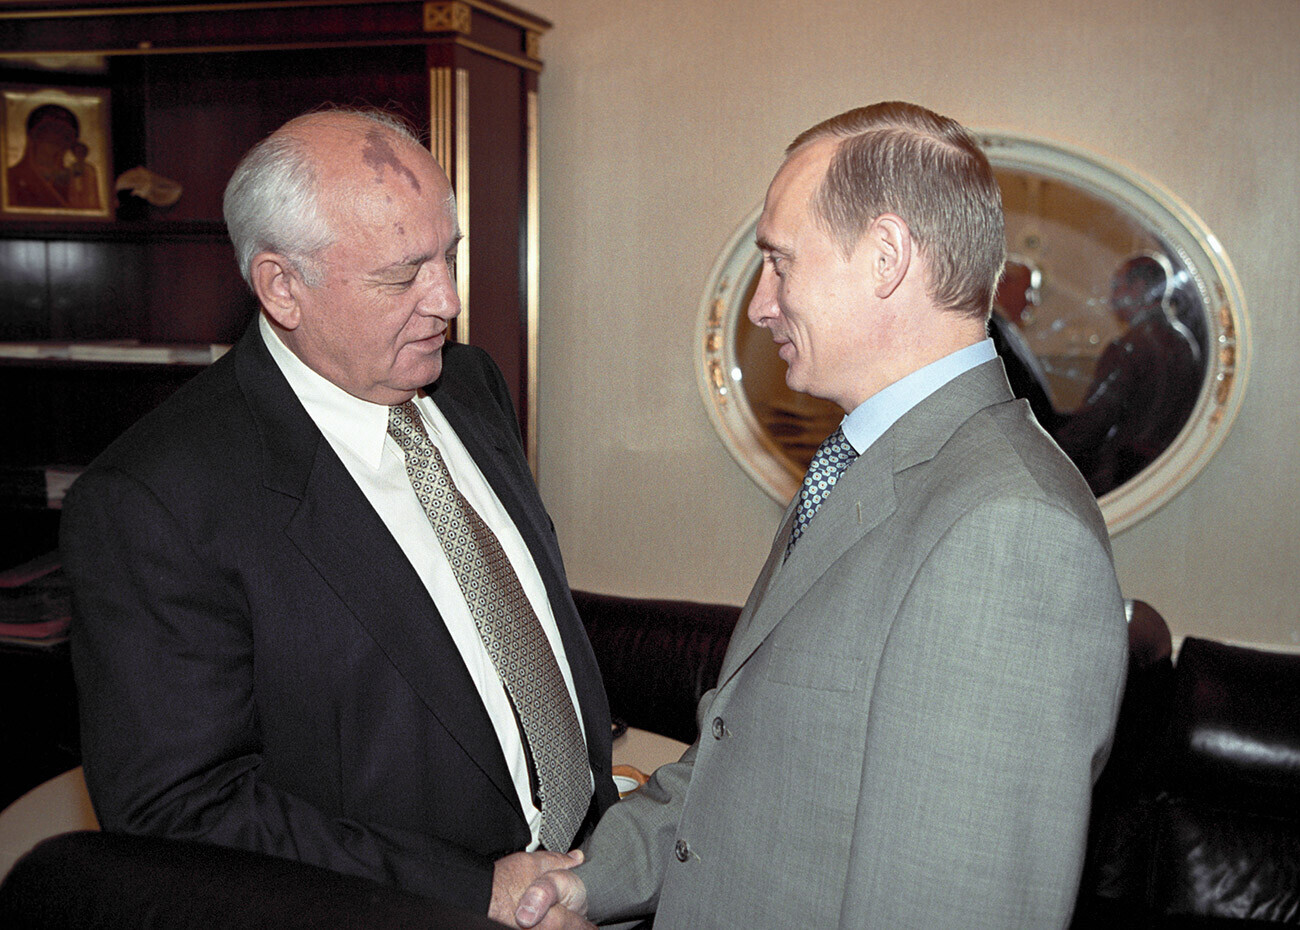 Ruski predsednik Vladimir Putin na srečanju z Mihailom Gorbačovom, 2000
